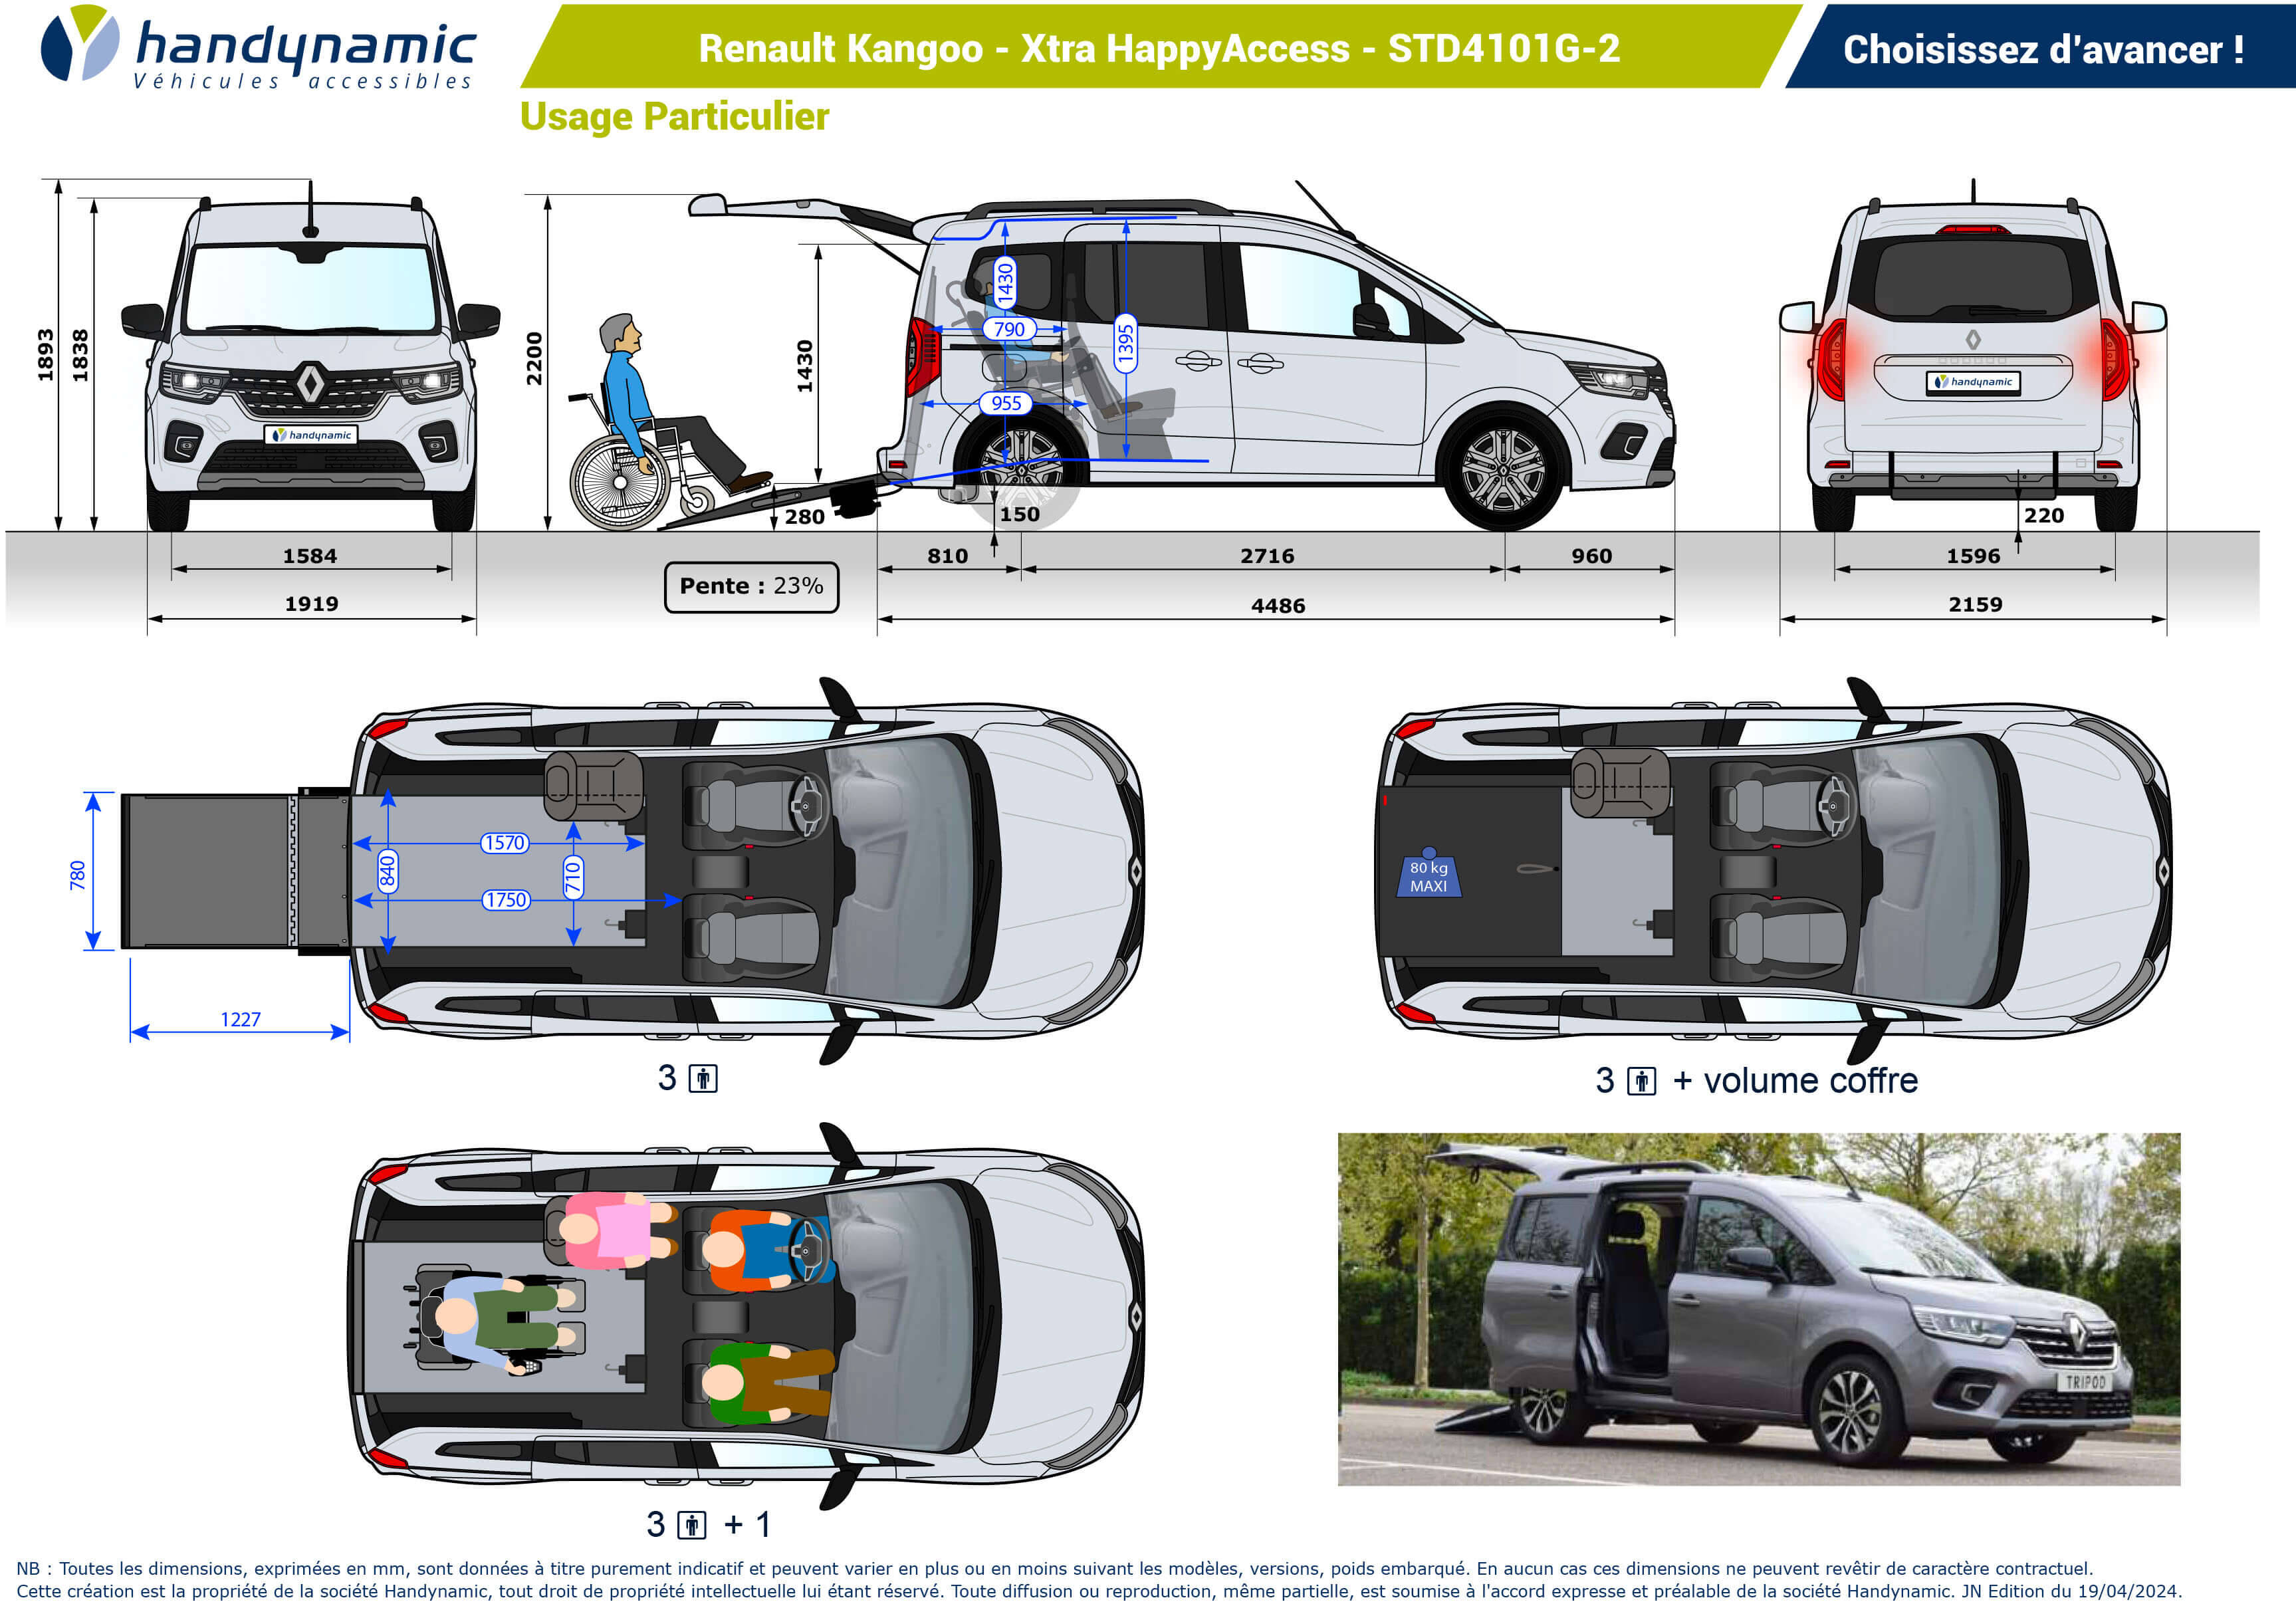 Schéma d'implantation du Renault Kangoo Xtra HappyAccess en STD4101G-2